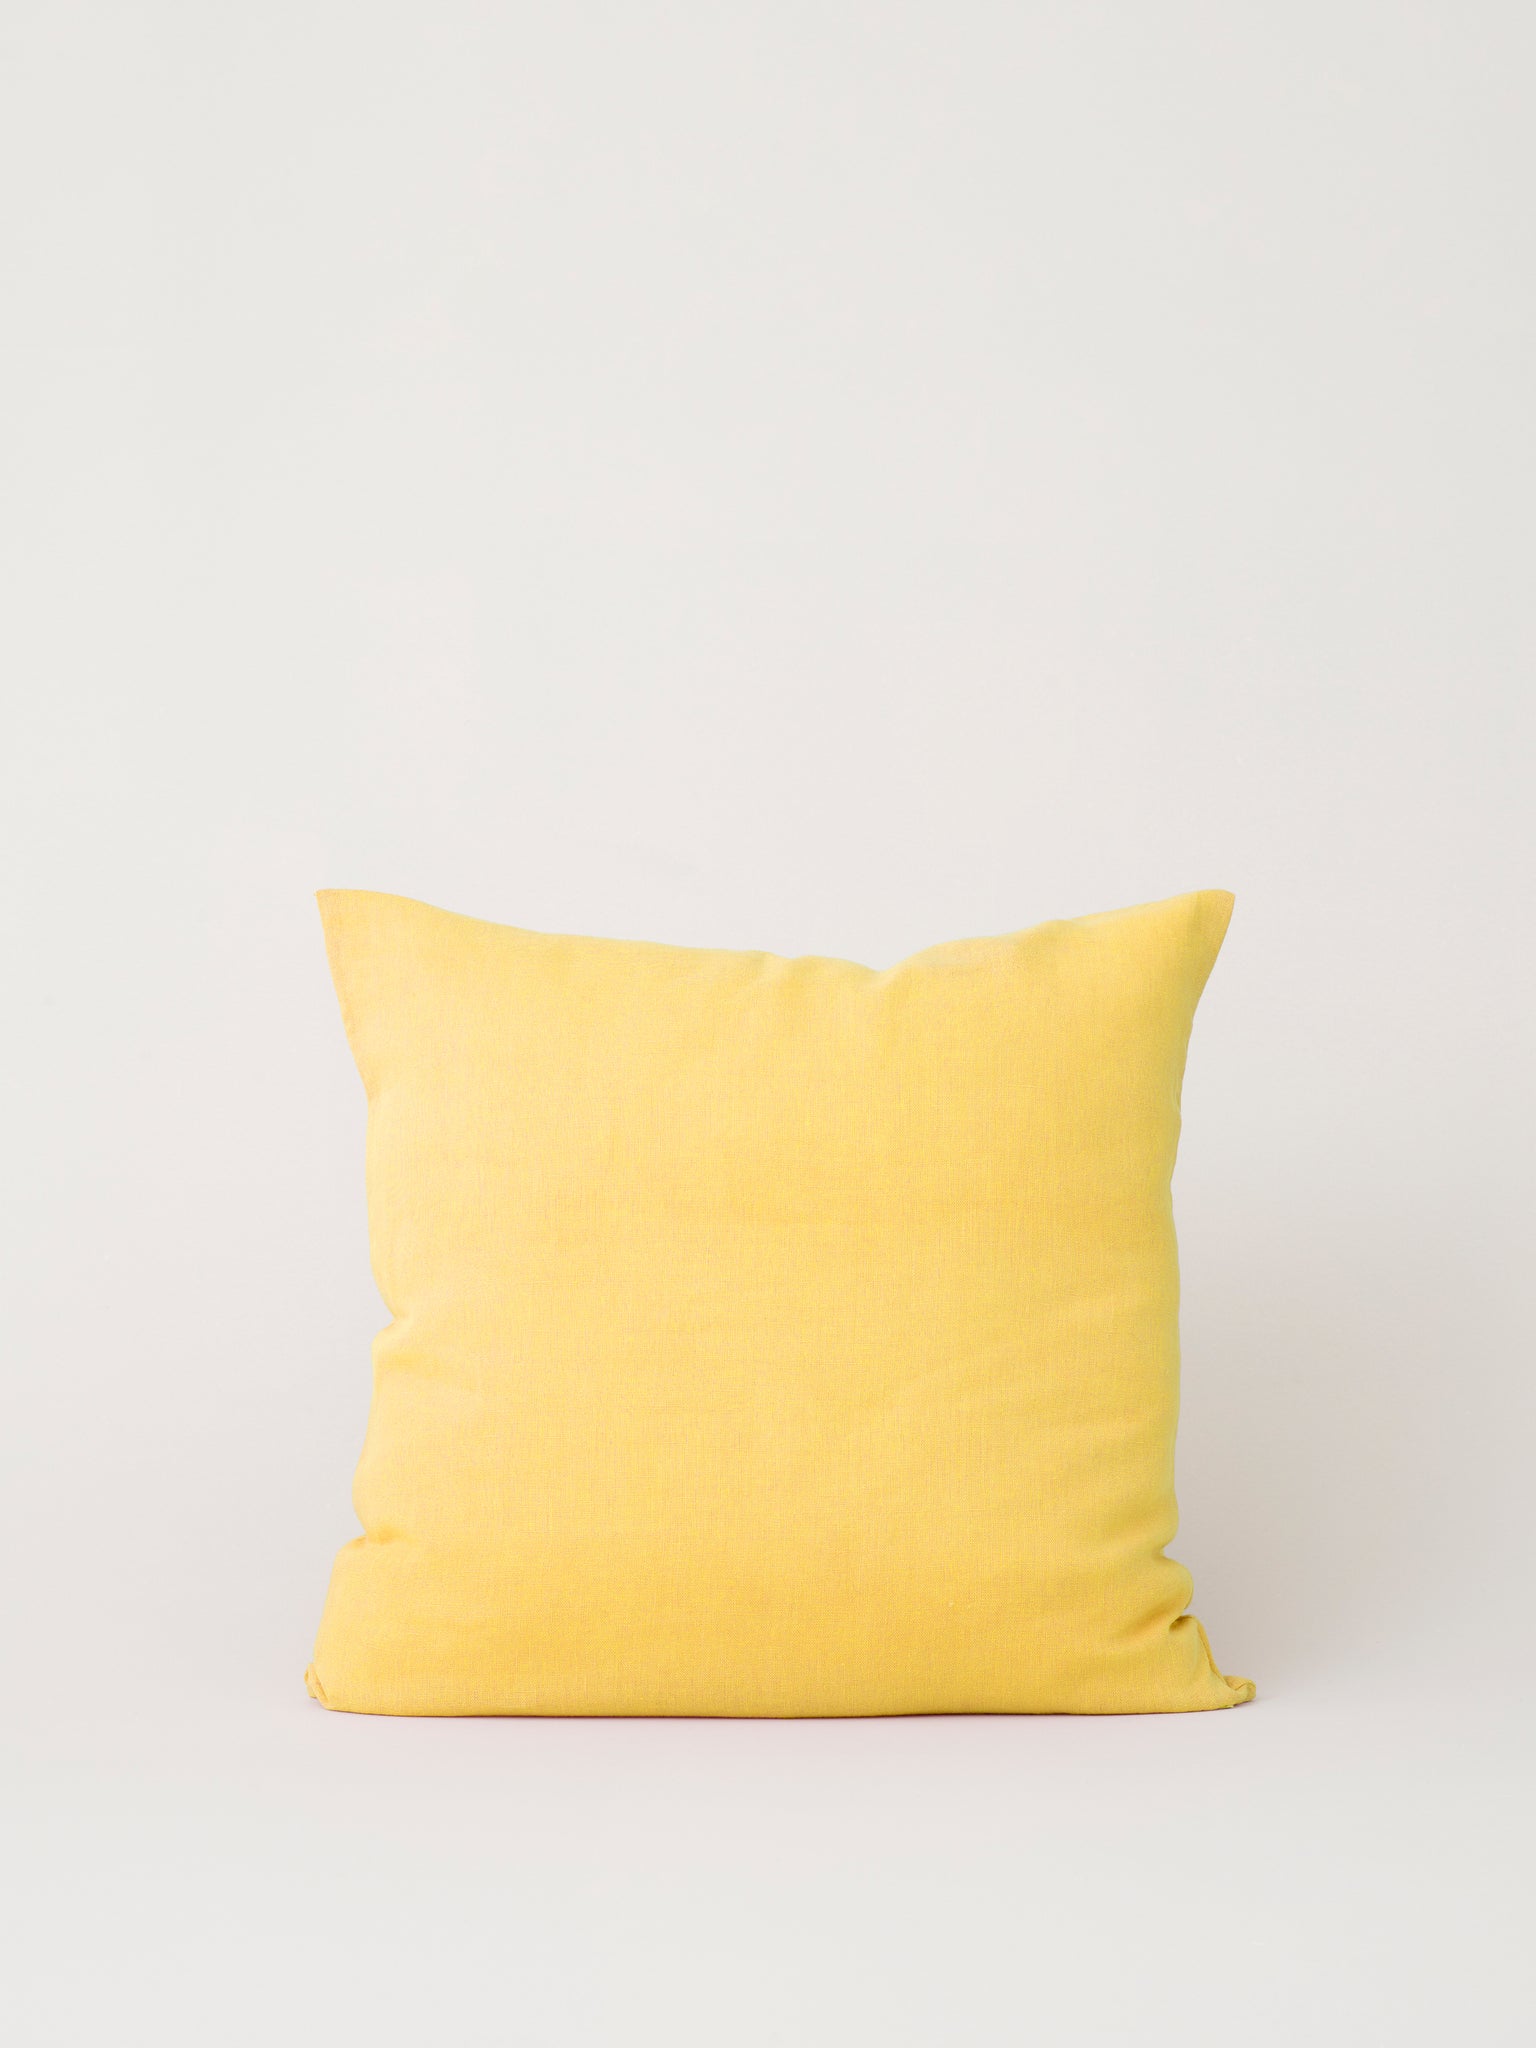 Stilleben Cushion Cover - 65 x 65 cm Cushion Cover Yellow